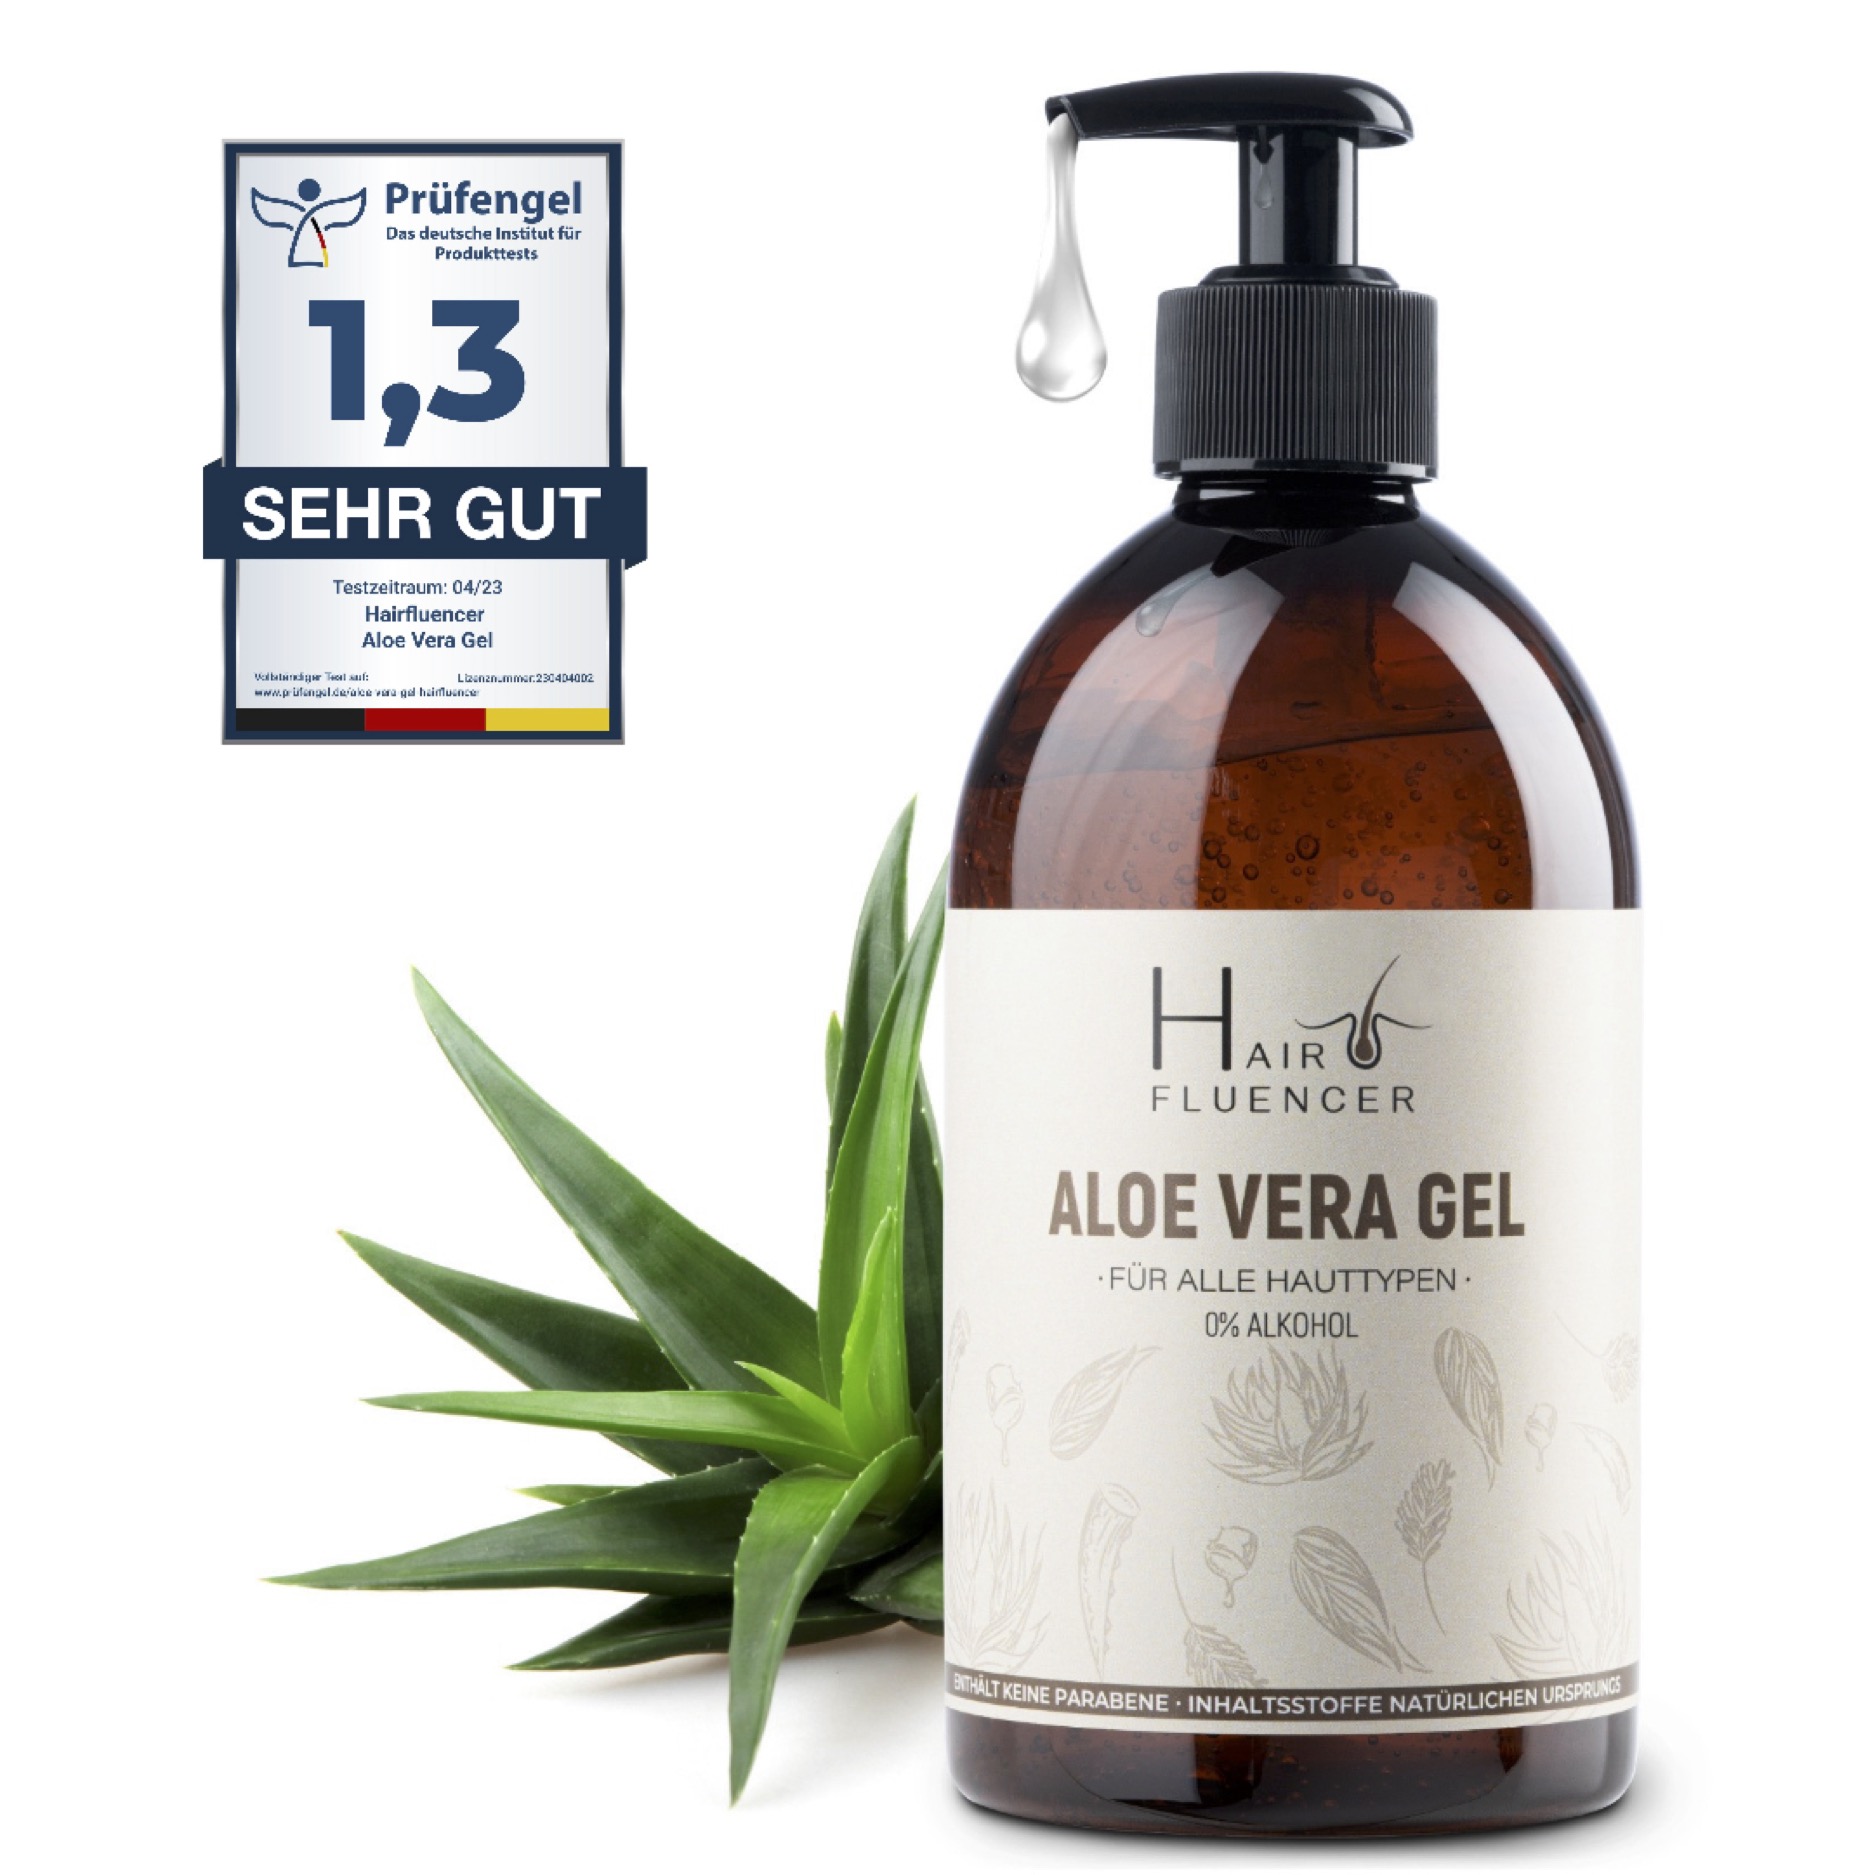 Hairfluencer Aloe Vera Gel aus 100% Blattsaft (500ml) Bio Aloe Vera Gel zur Pflege von Haut und Haare - feuchtigkeitsspendend und entzündungshemmend - Aloe Vera gegen Pickel und Akne